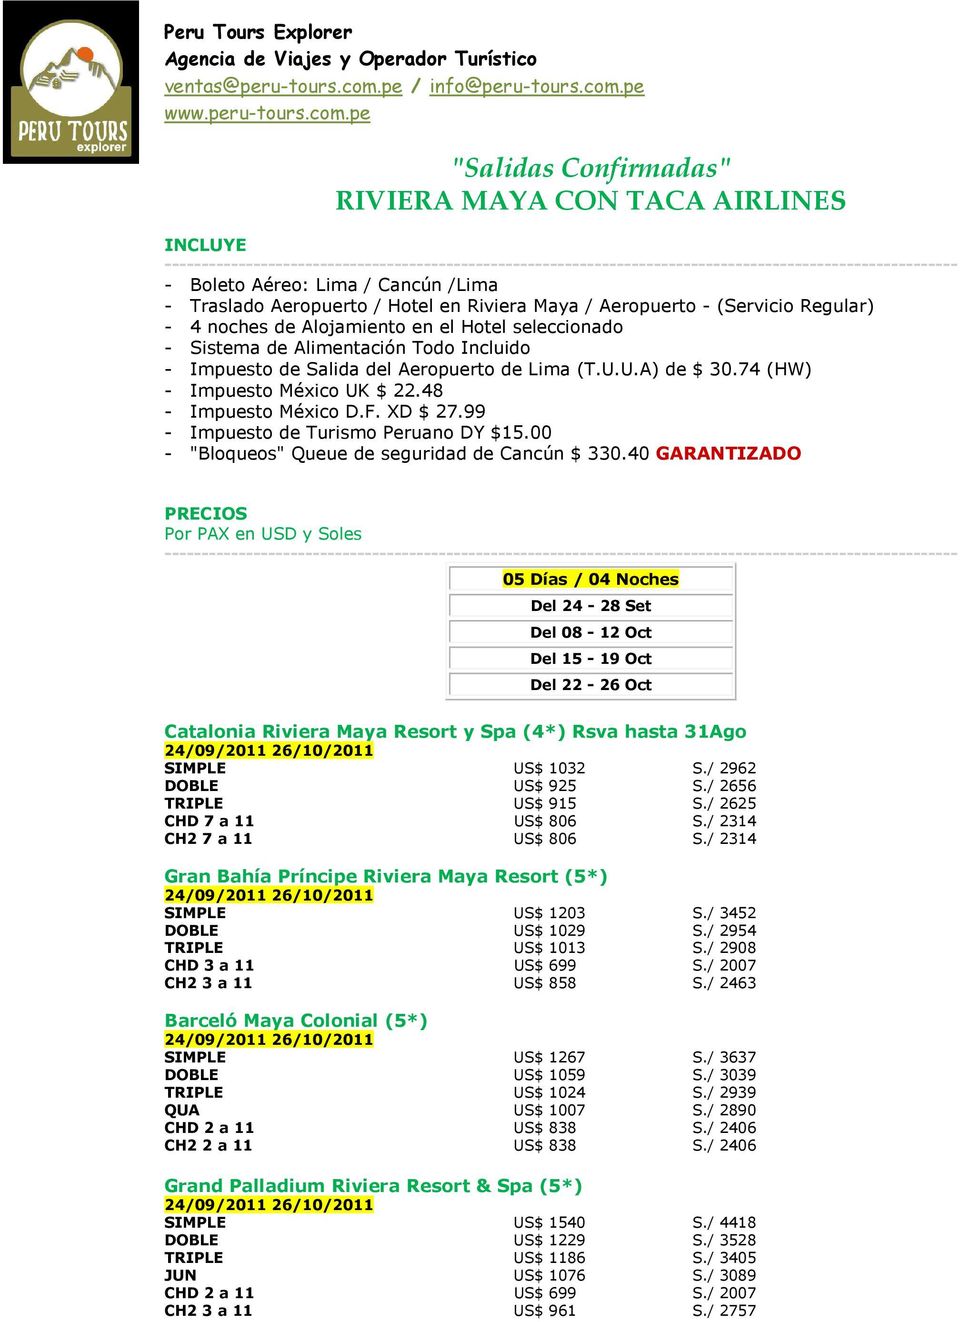 XD $ 27.99 - Impuesto de Turismo Peruano DY $15.00 - "Bloqueos" Queue de seguridad de Cancún $ 330.